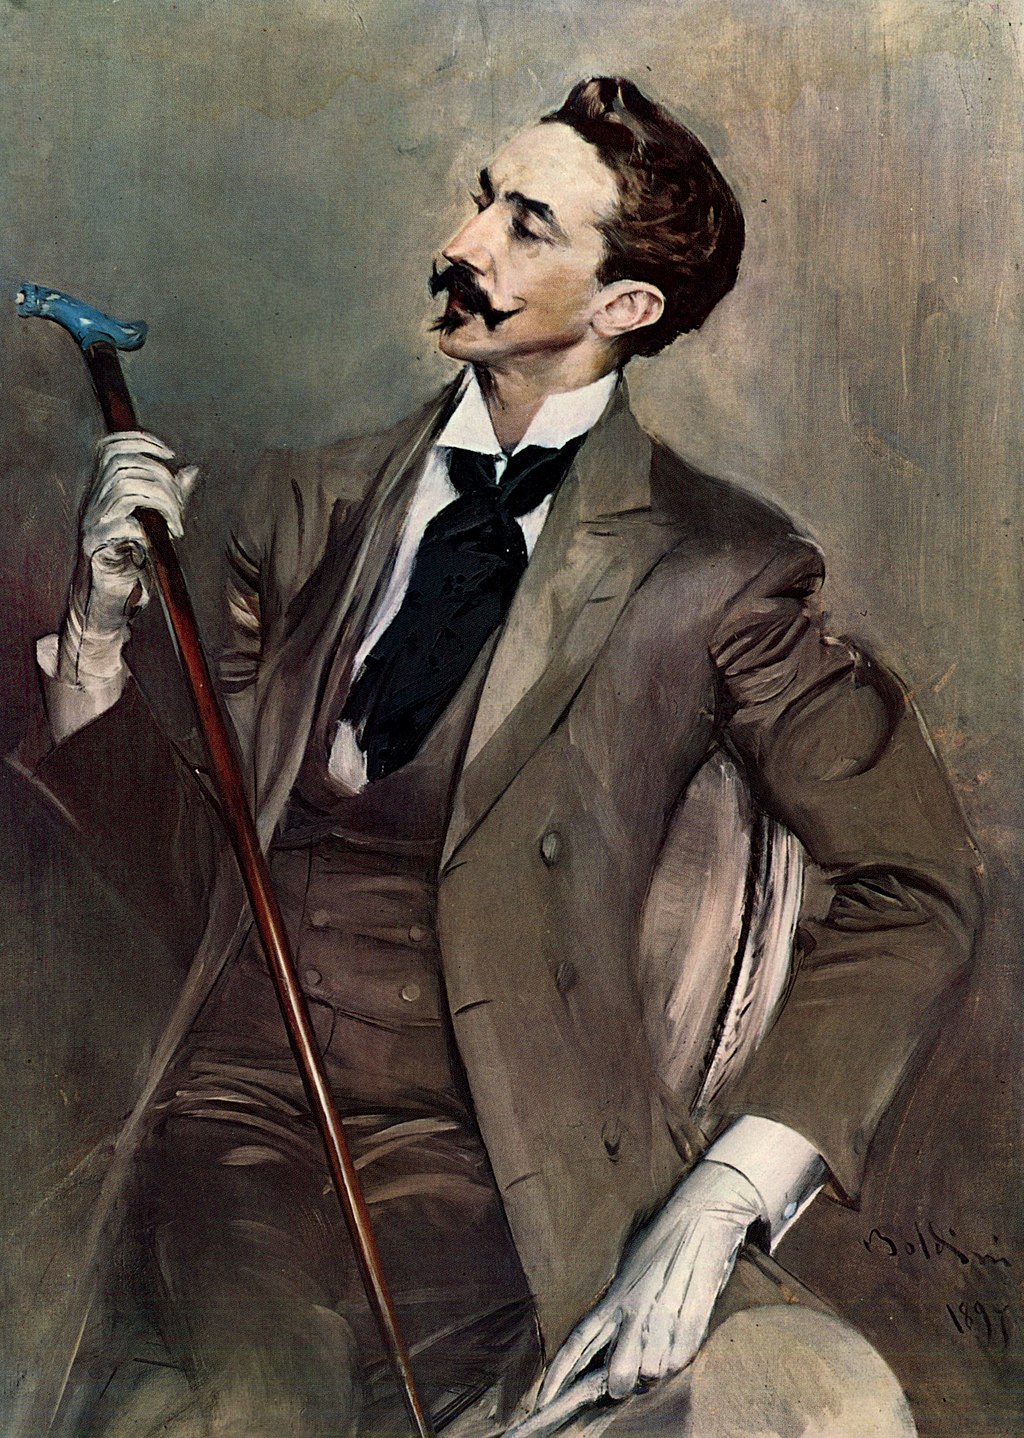 Portrait of the Count Robert de Montesquiou by Giovanni Boldini, 1897